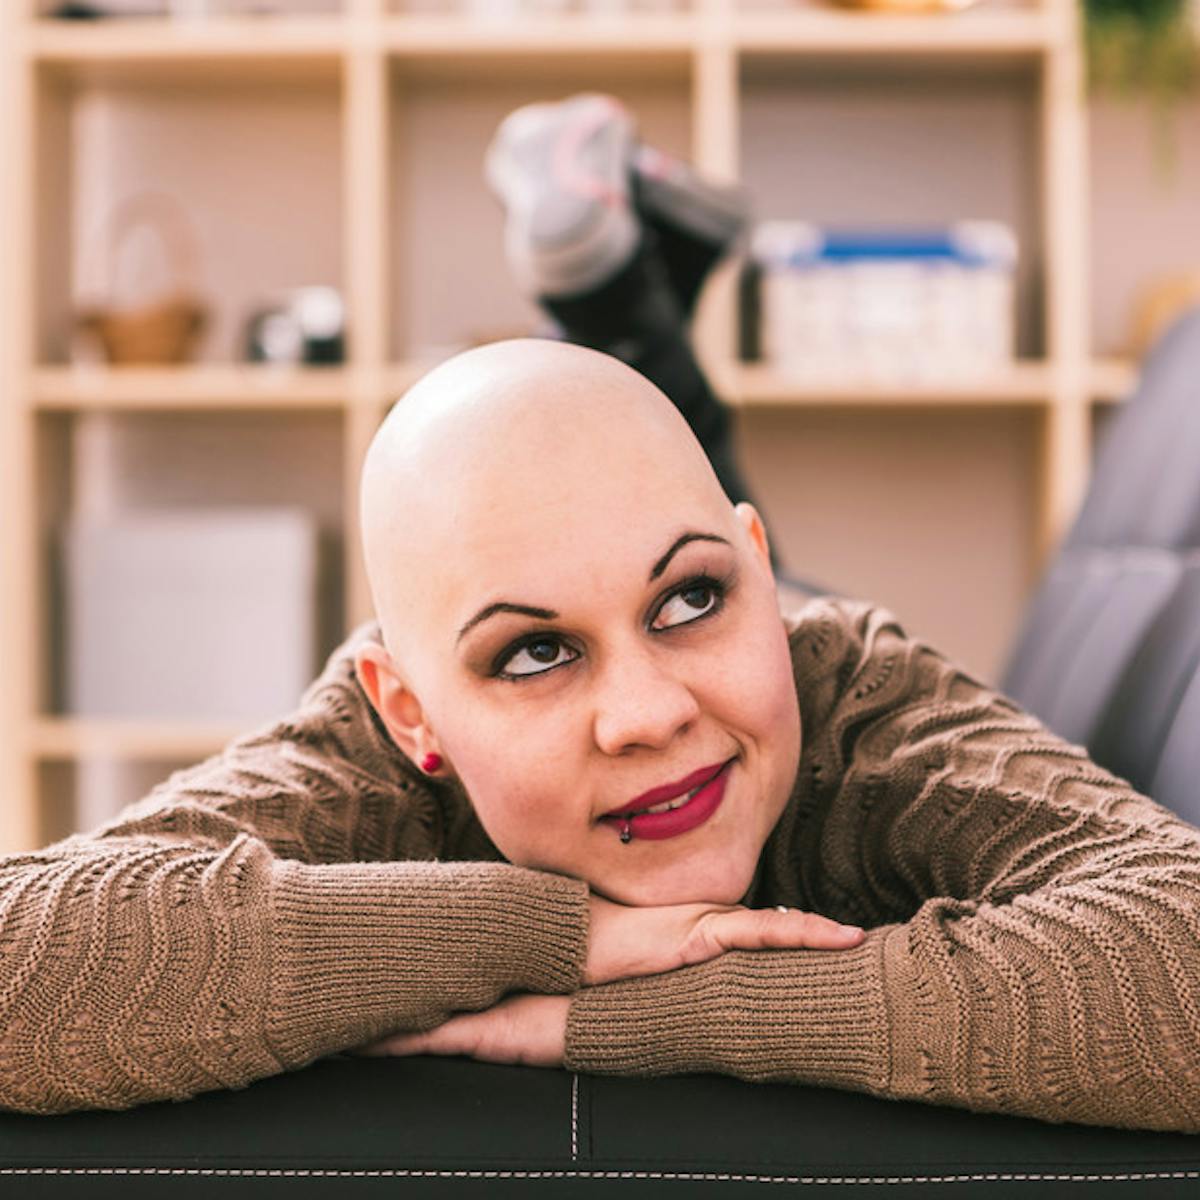 Cancer colon femme. Cancer colon jeune femme, Avant une FIV, 7 choses à savoir | Santé Magazine